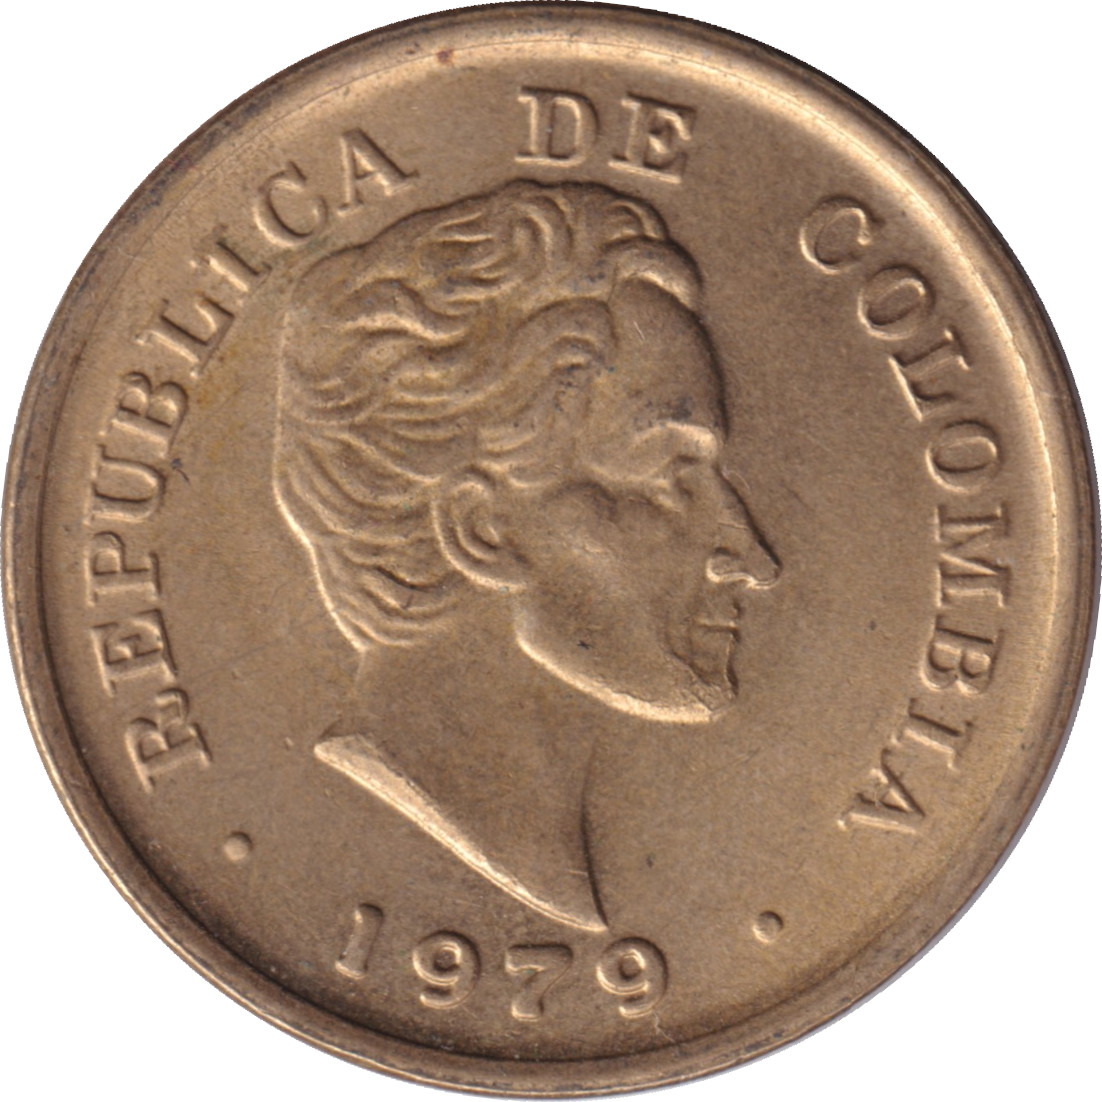 25 centavos - Santander